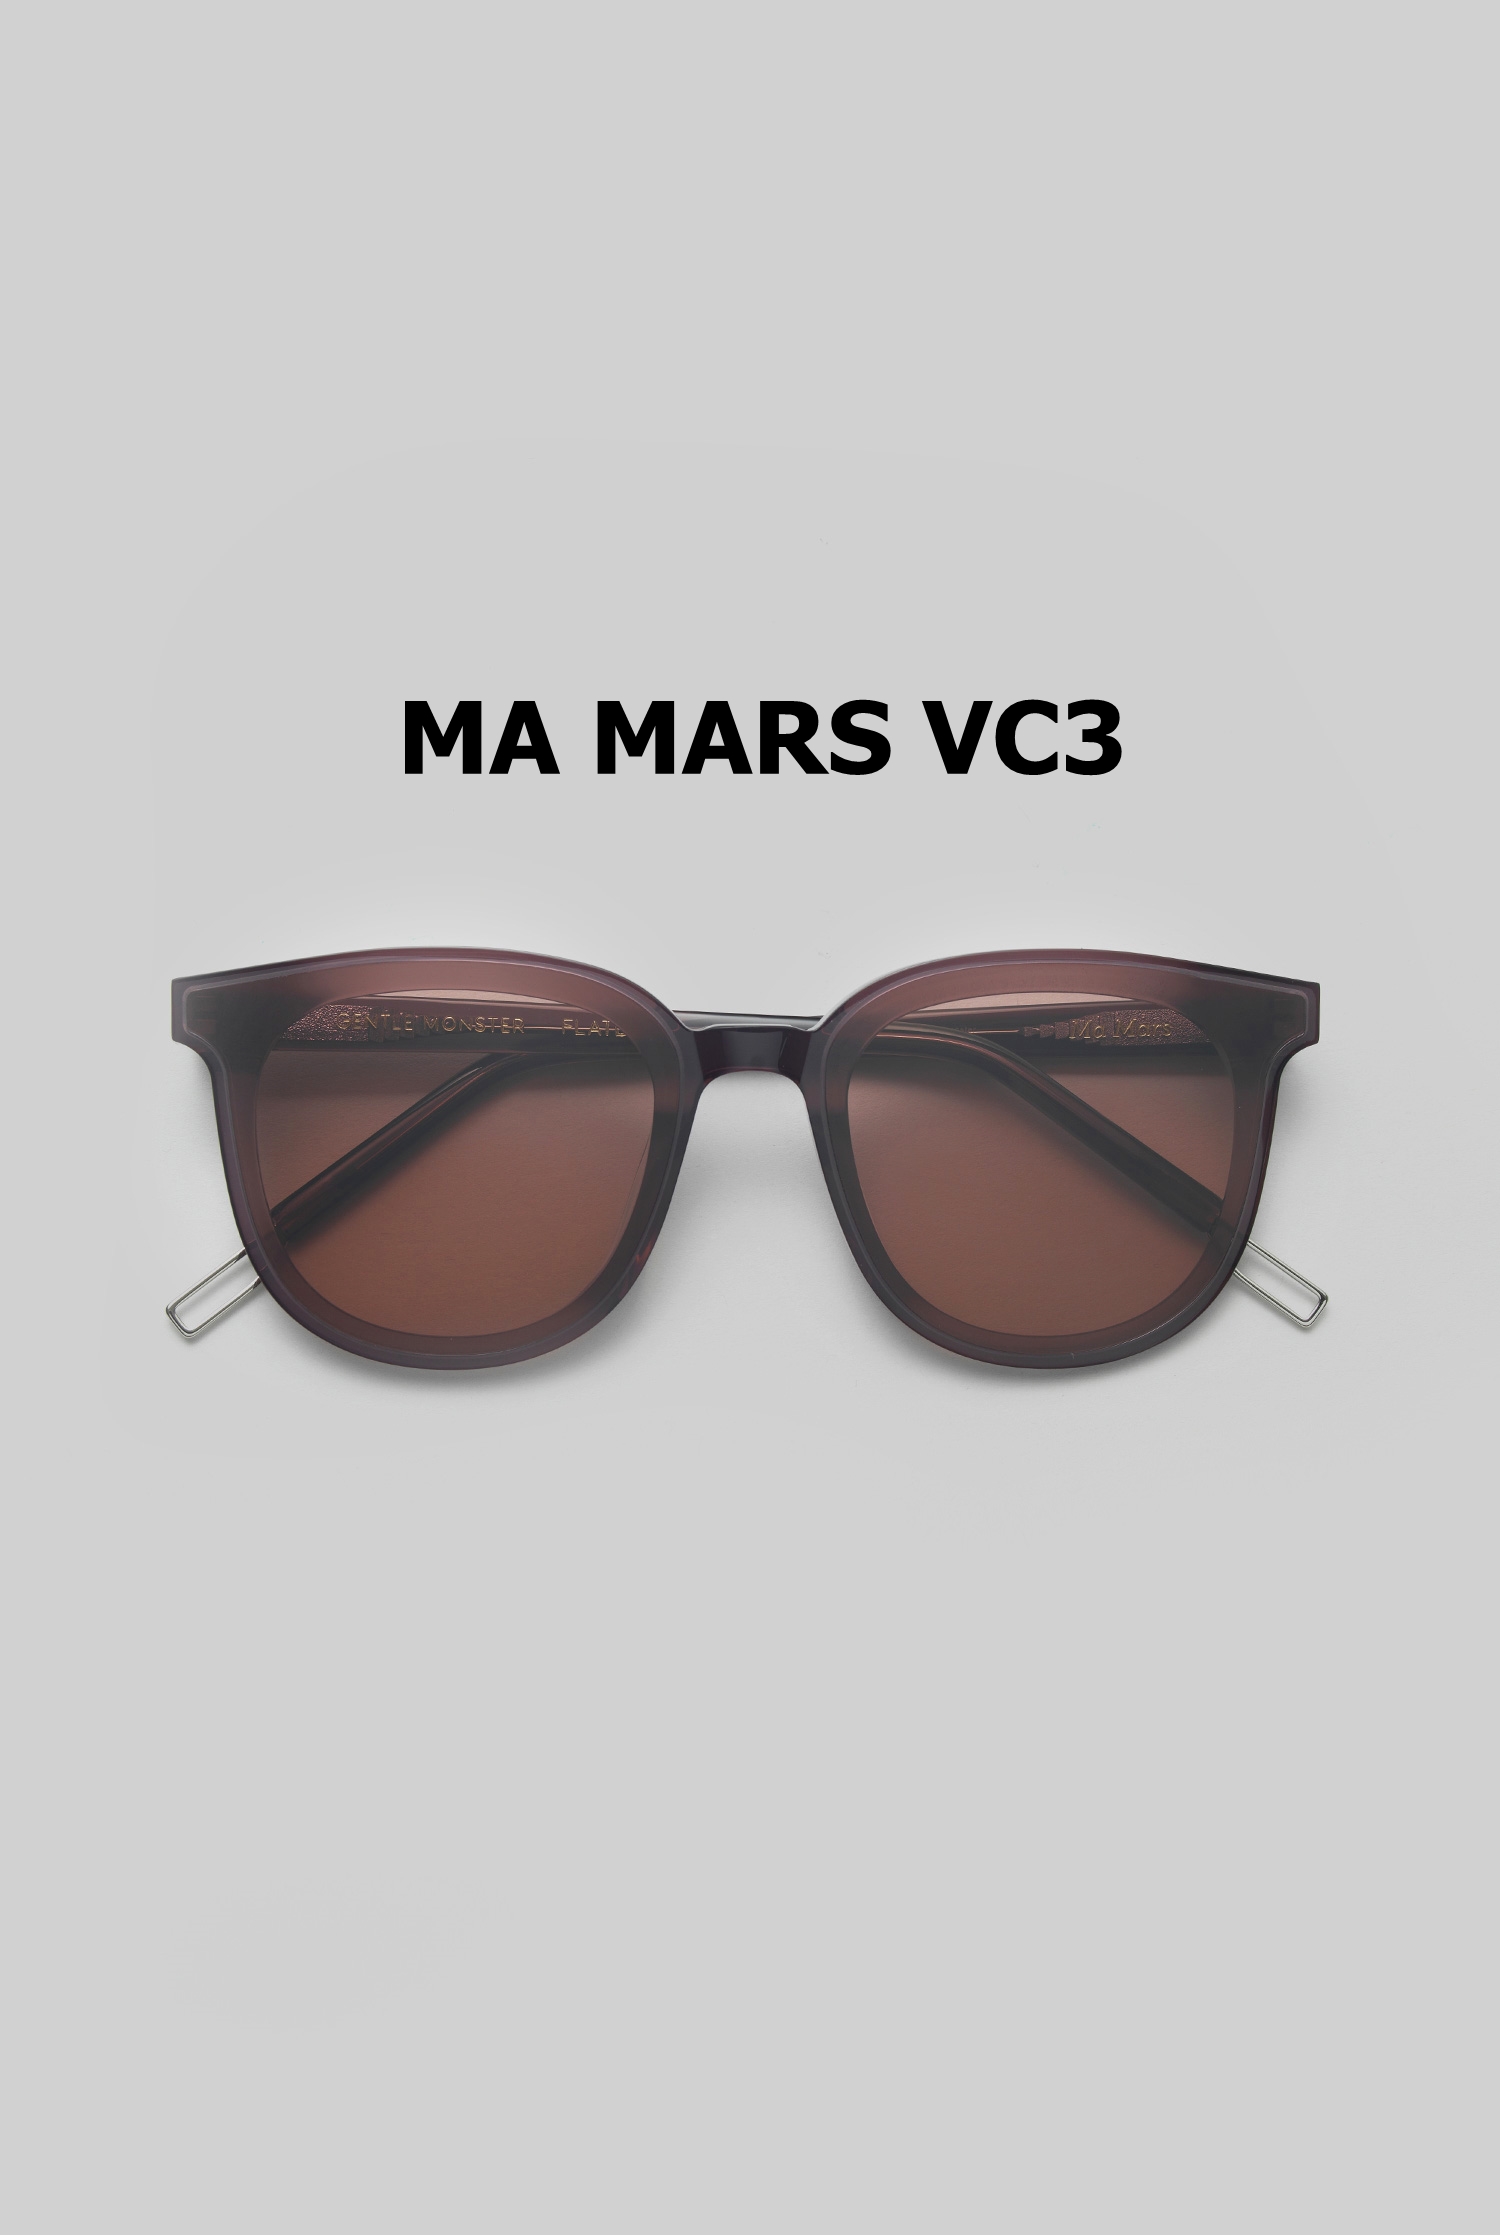 MA MARS VC3